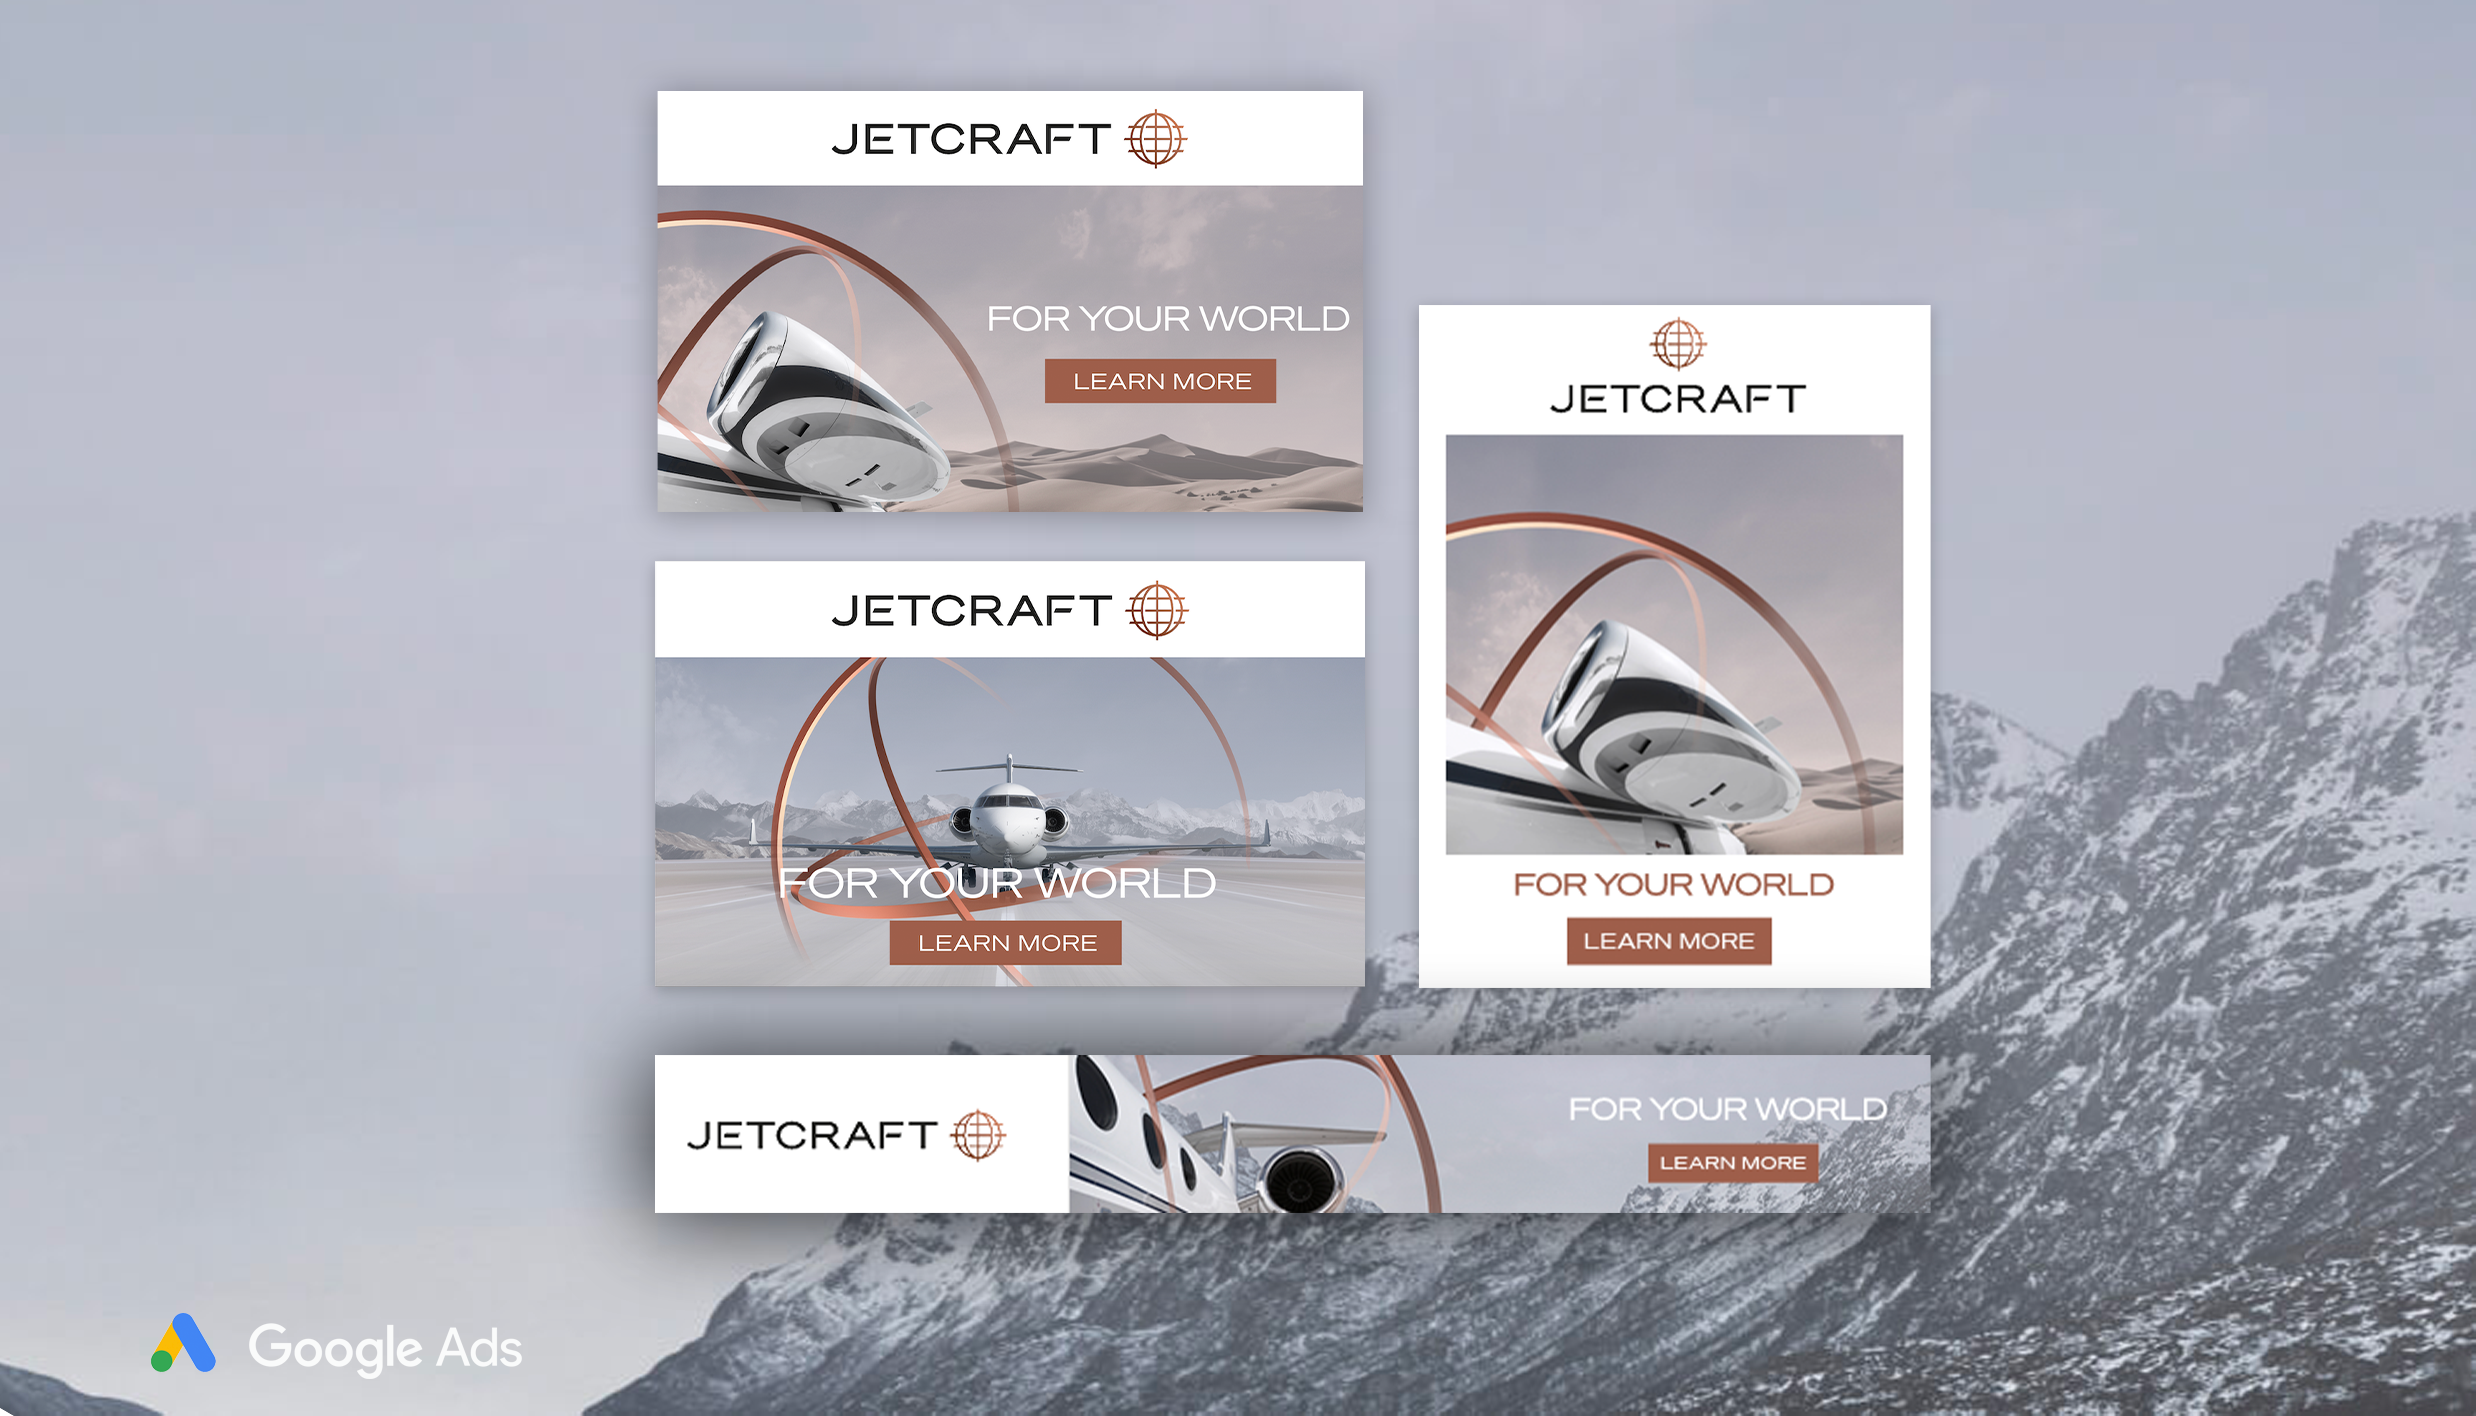 Google Ads Design Jetcraft